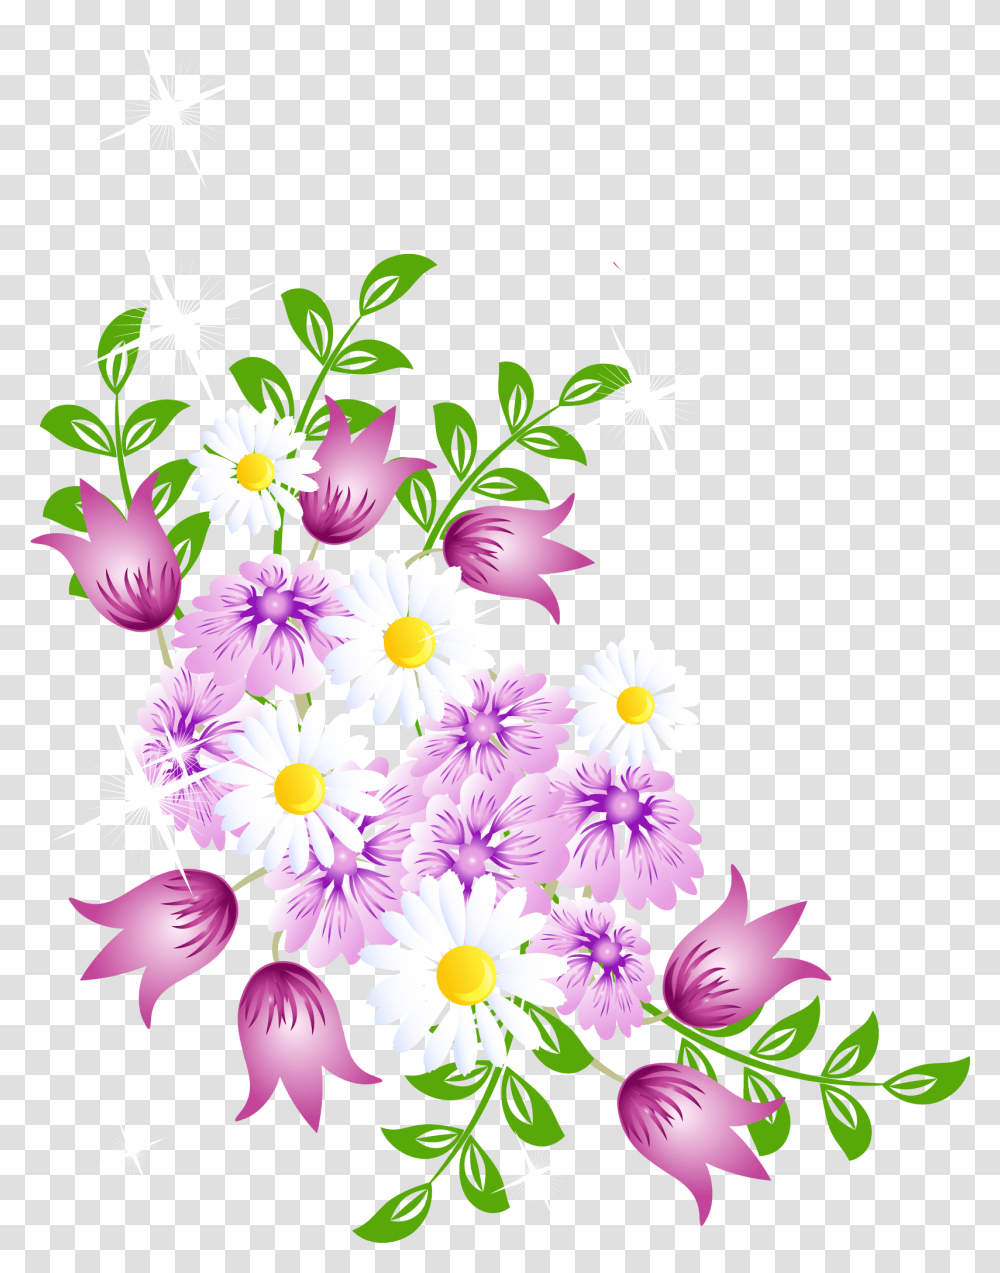 Spring Flowers, Plant, Floral Design Transparent Png